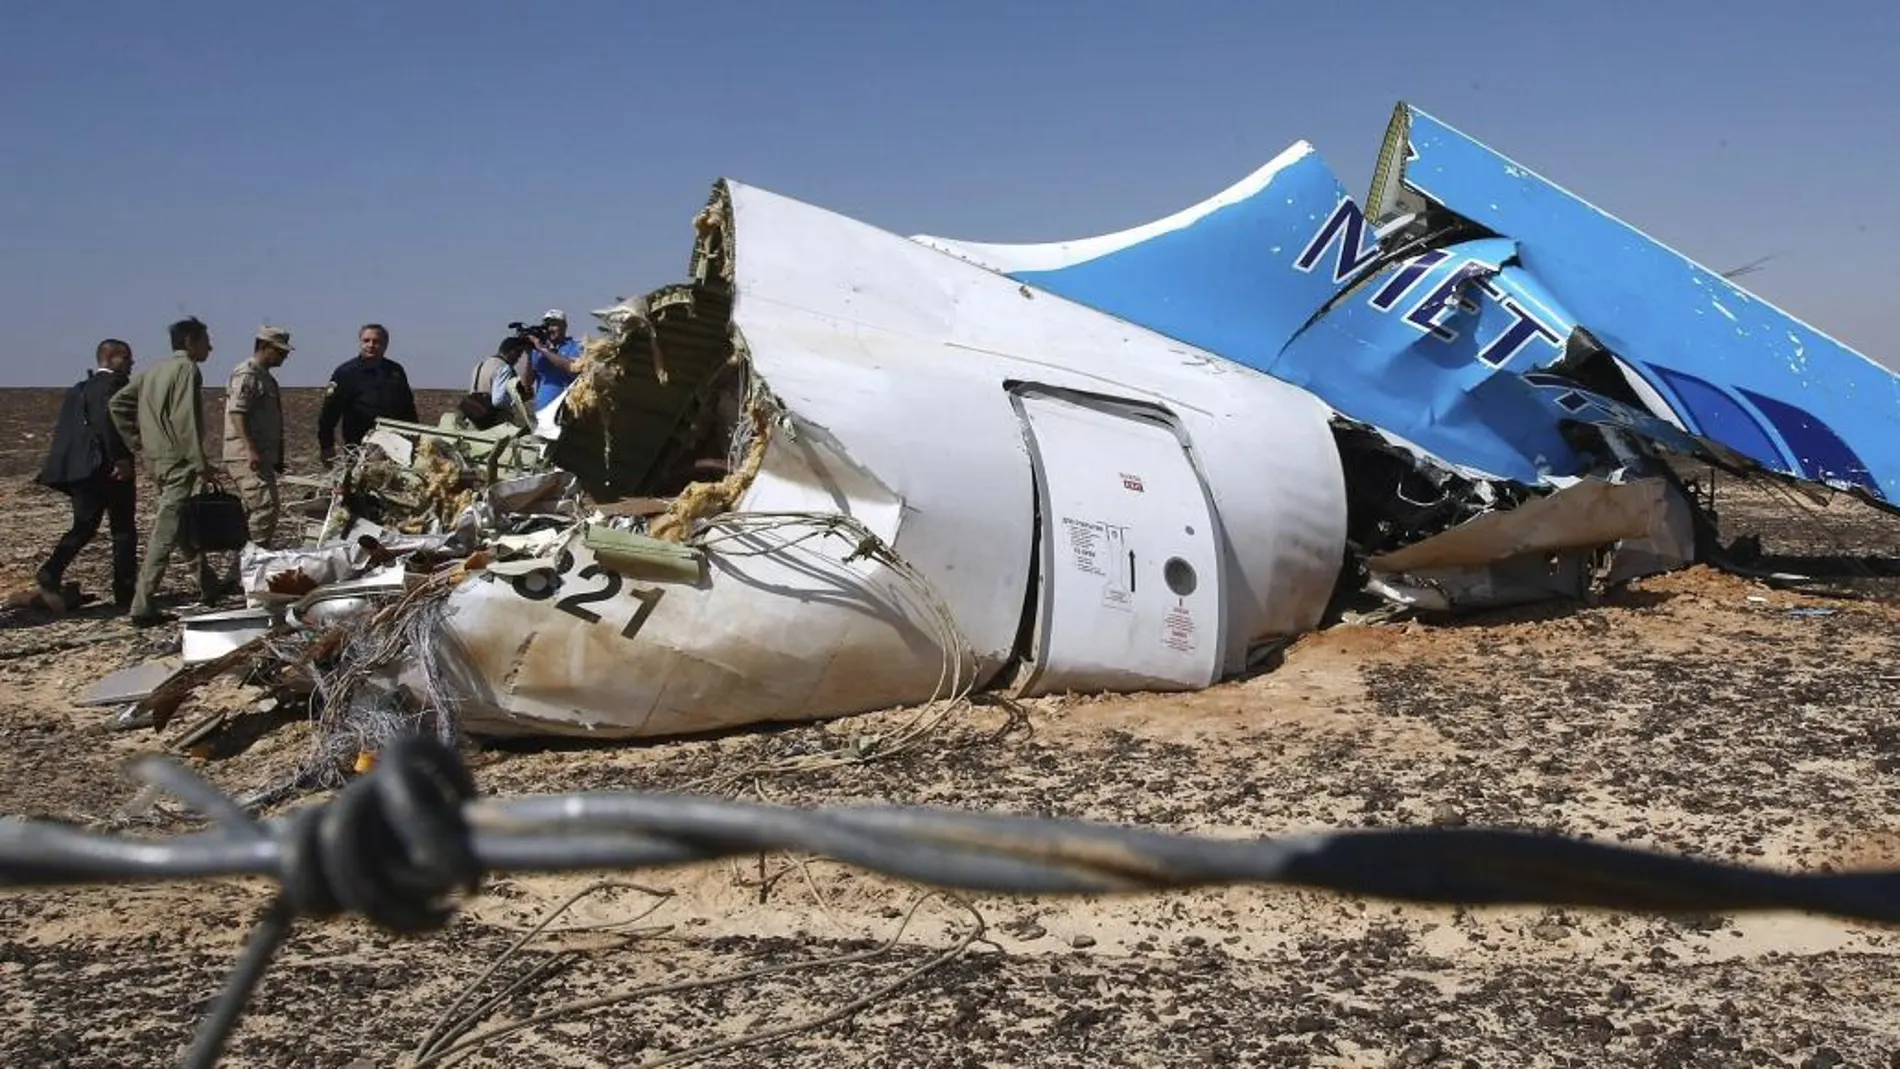 El ministro de Situaciones de Emergencia ruso, Vladimir Puchkov observa el fuselaje del avión siniestrado en el Sinaí (Egipto).